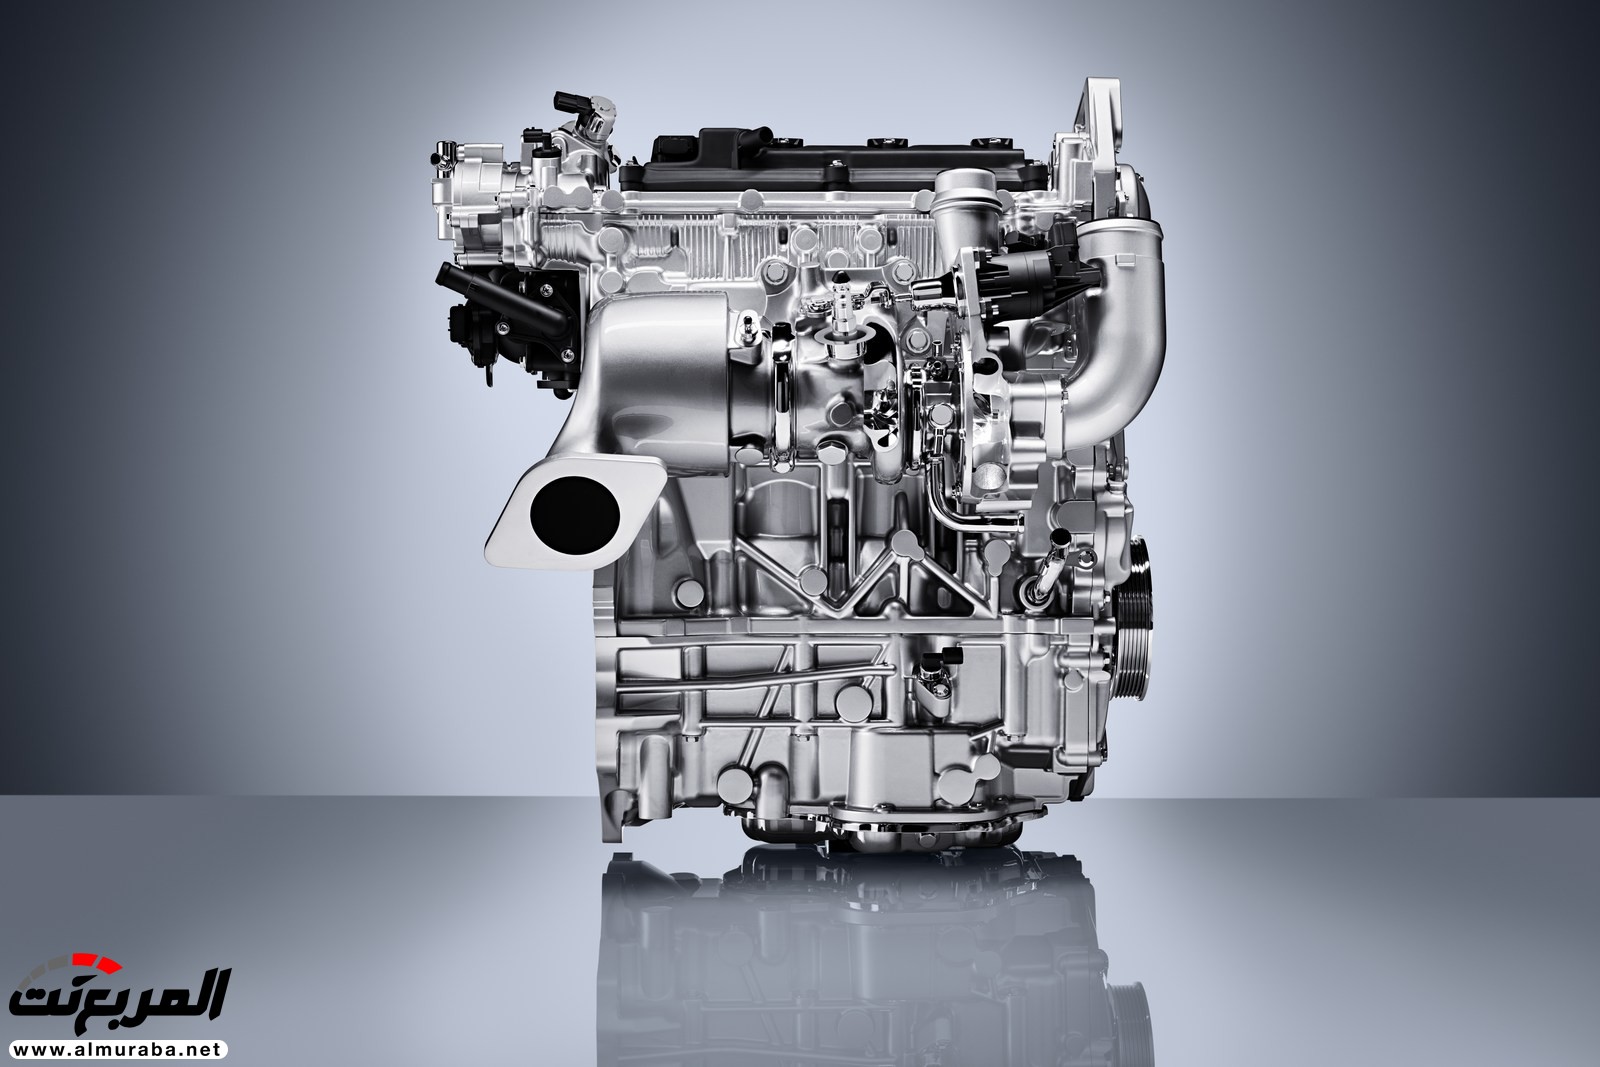 إنفينيتي QX50 الجديدة كلياً 2019 تظهر رسمياً بمحرك هو الأكثر تطوراً 25